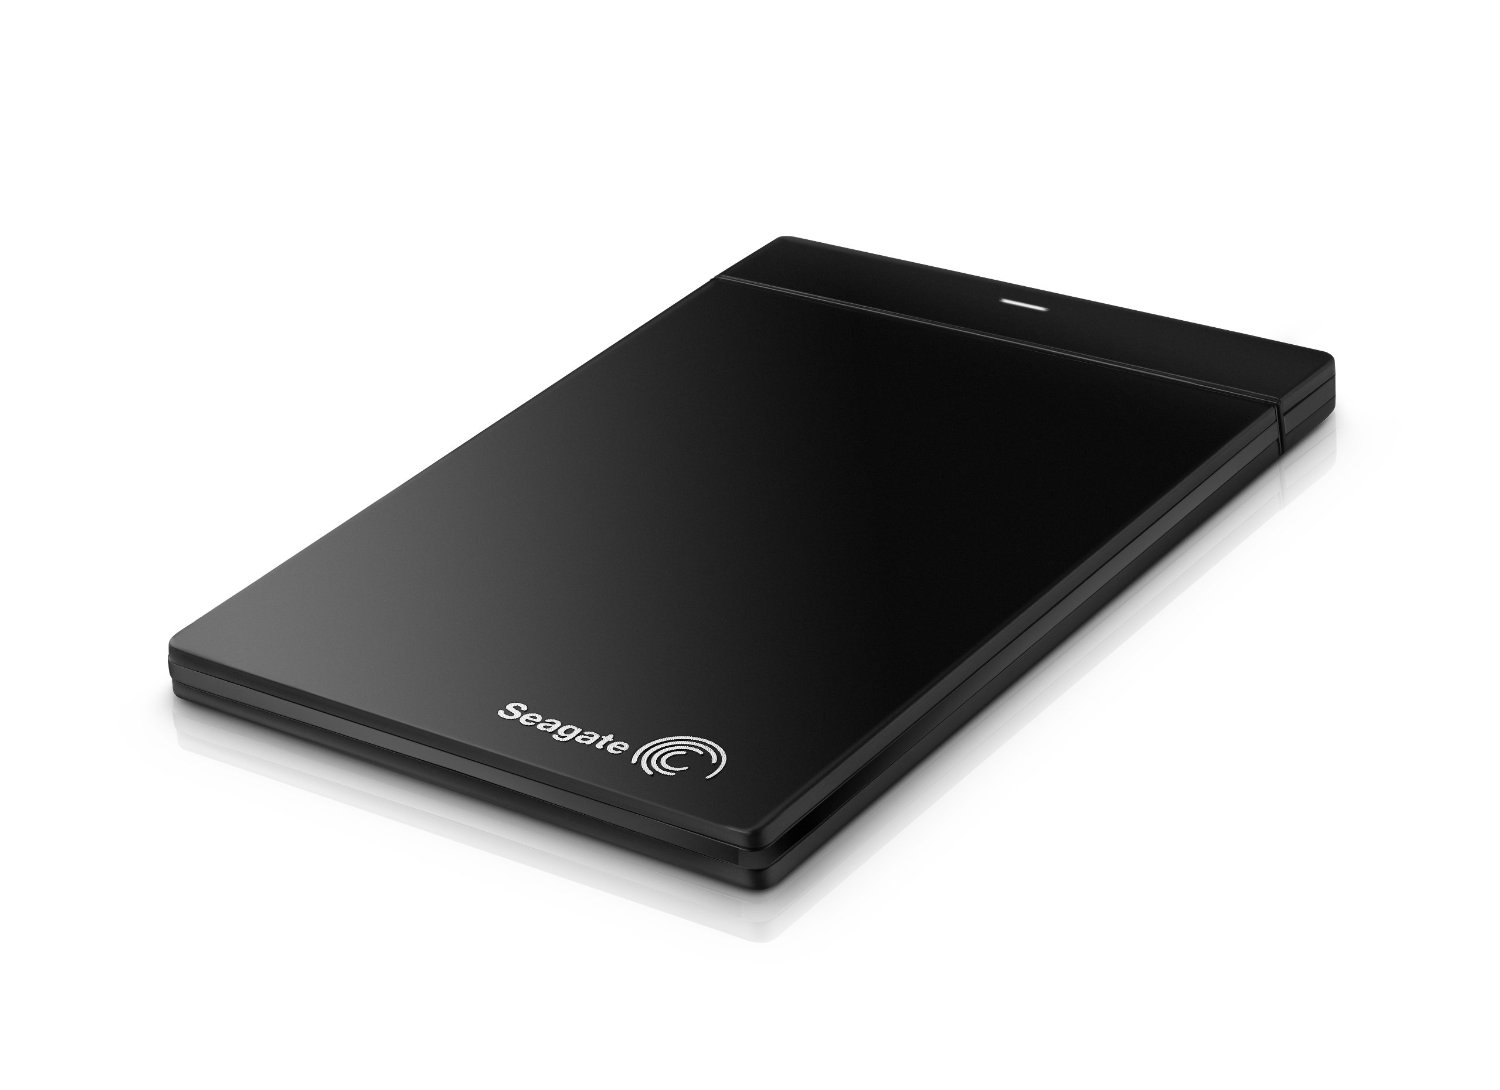 希捷 Seagate 500GB USB 3.0 超薄型便携式移动硬盘 STCD500100 $64.99免运费